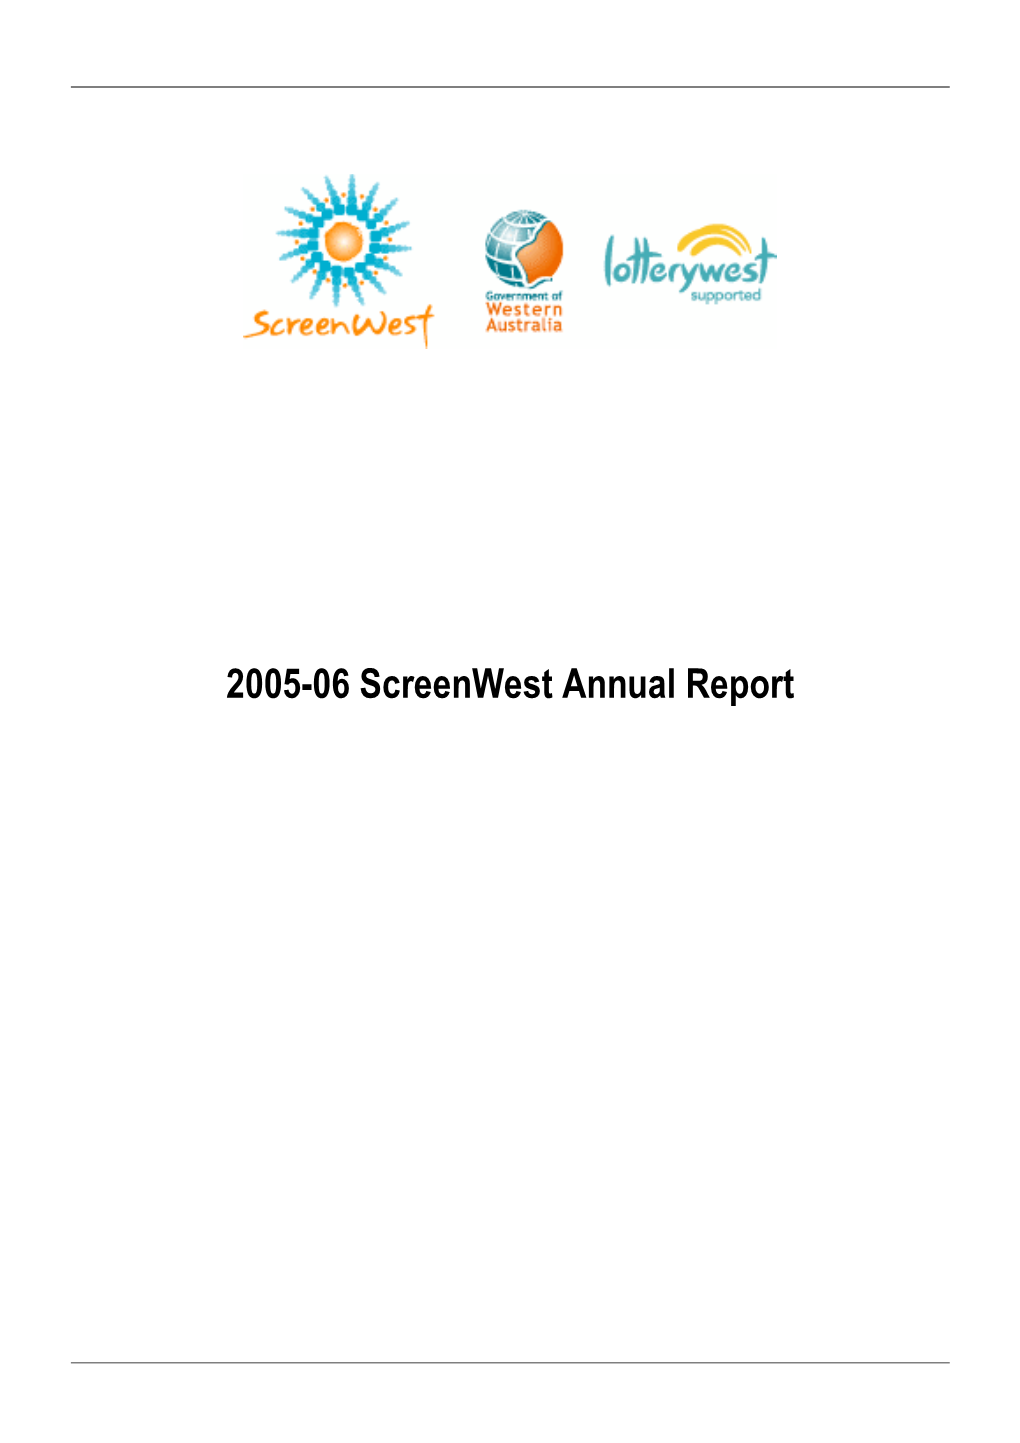 Screenwest Annual Report 2005-06PDF